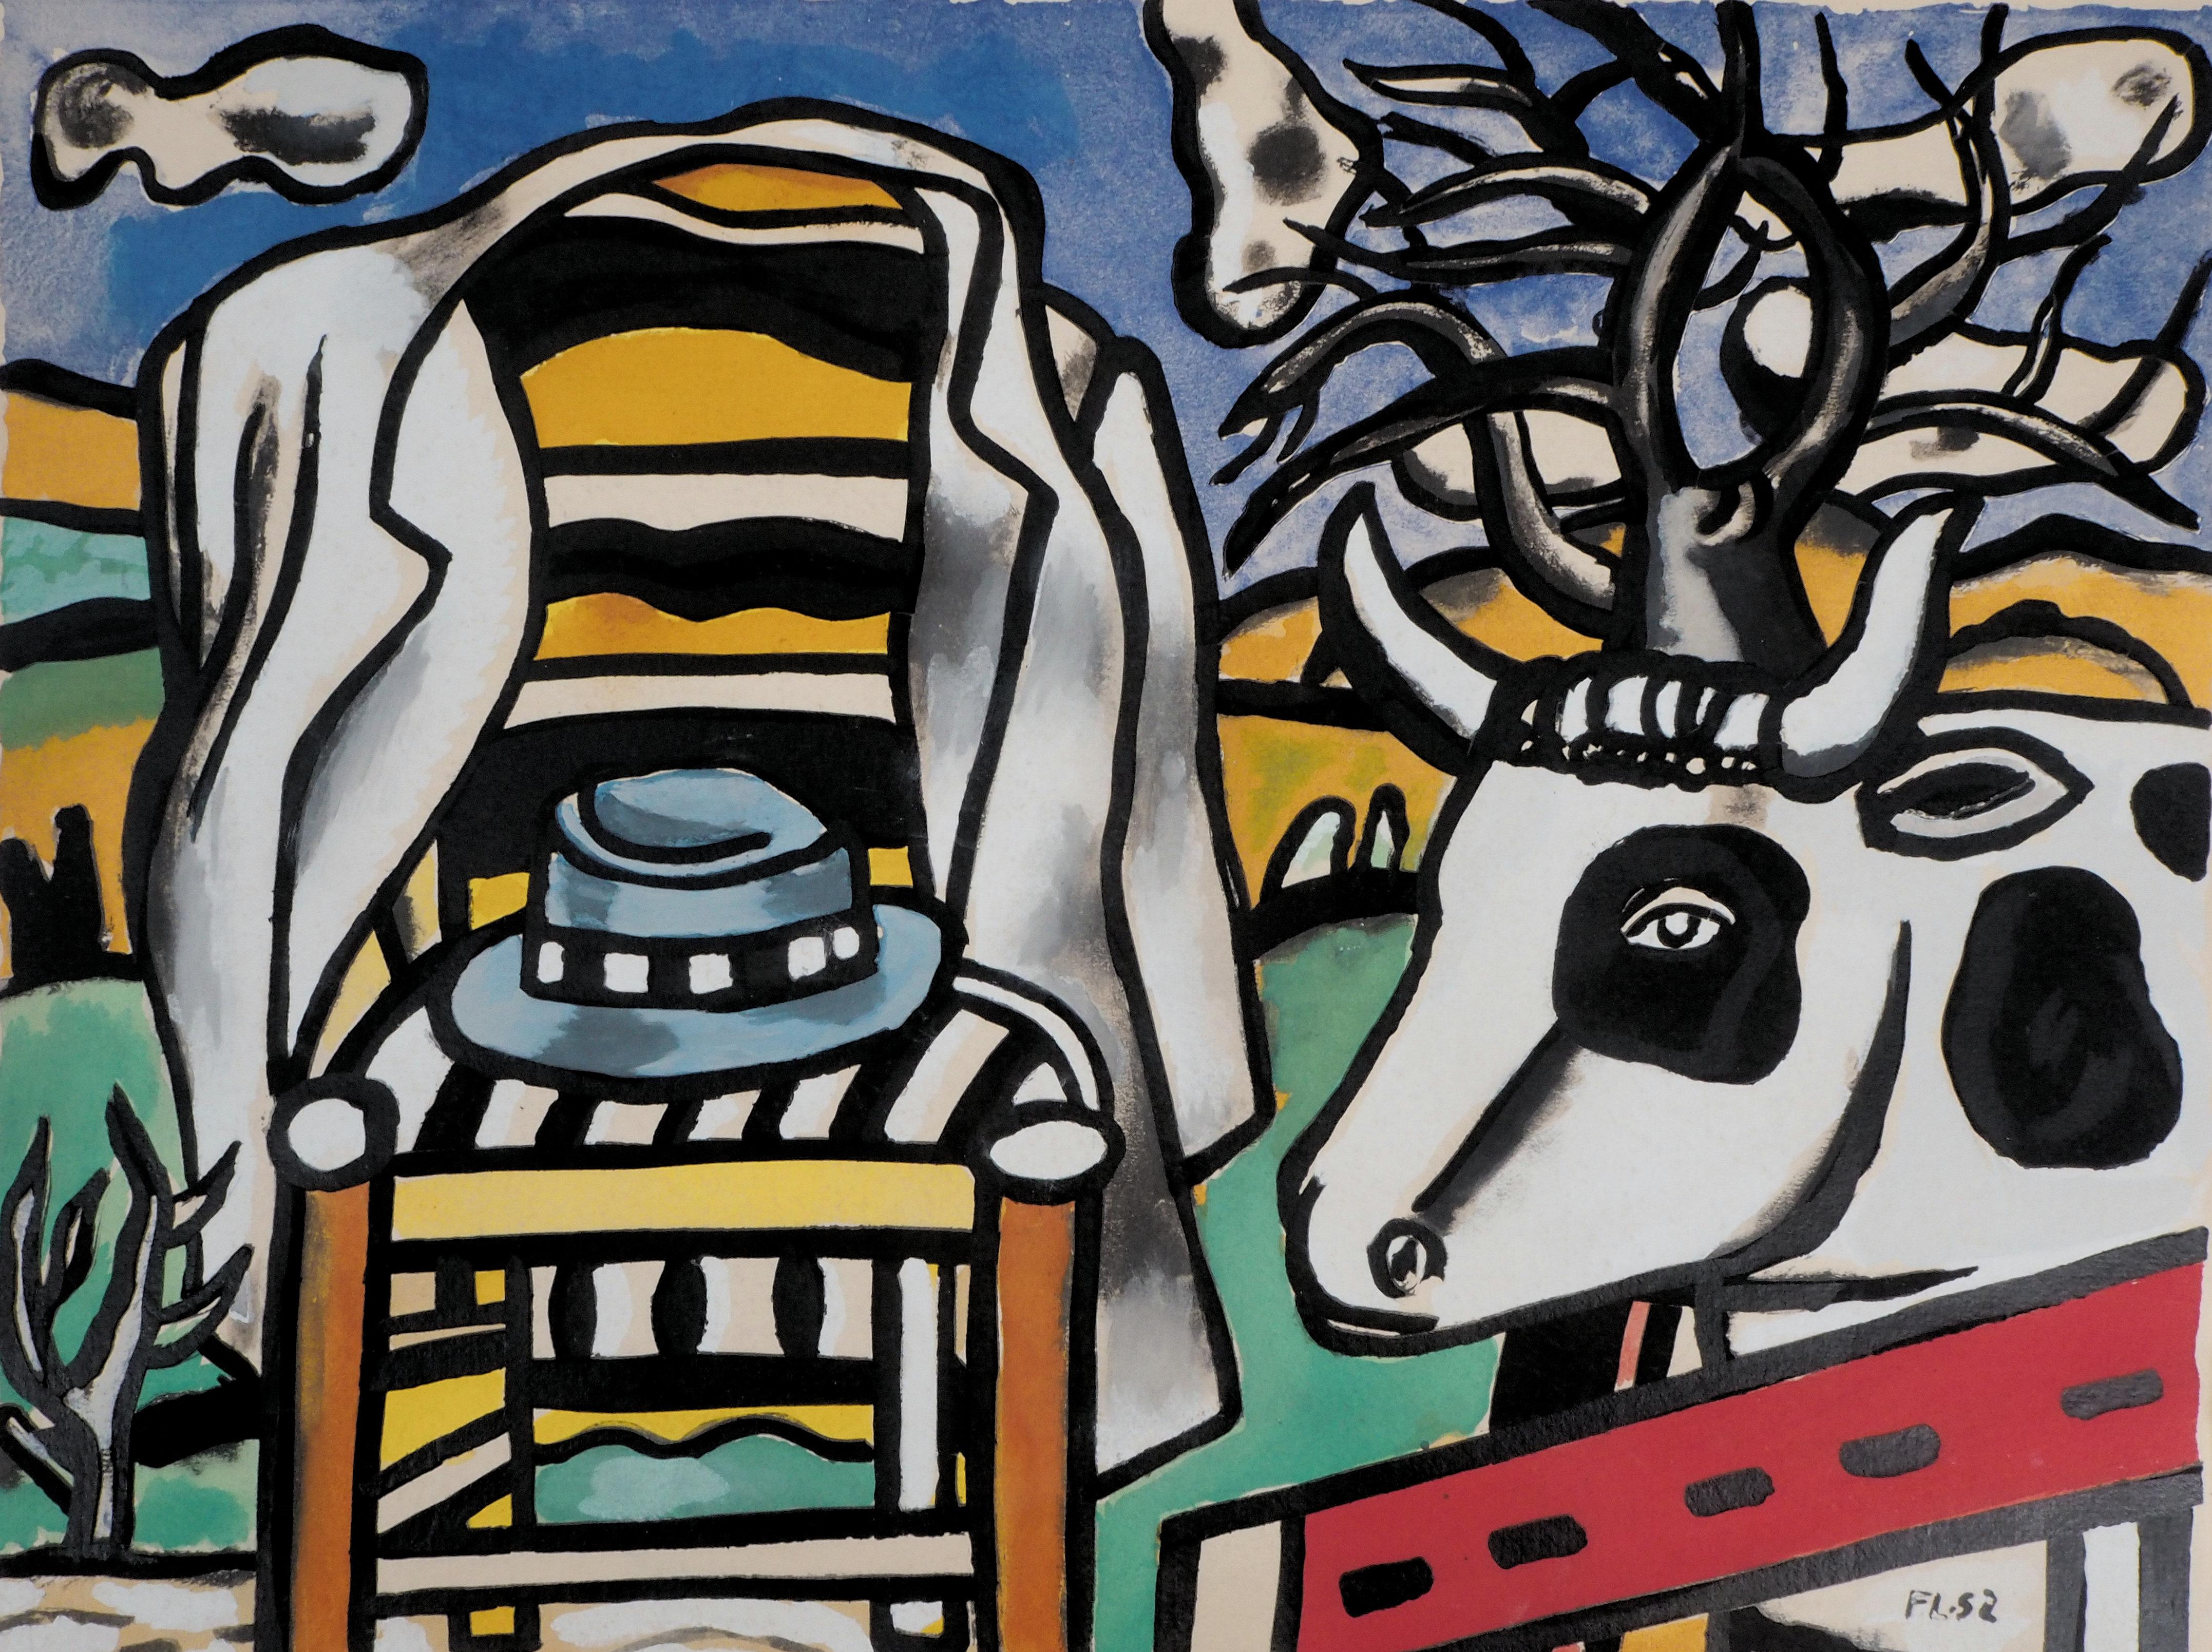  Chaise, chapeau et vache - Lithographie et pochoir, 1959 - Moderne Print par Fernand Léger